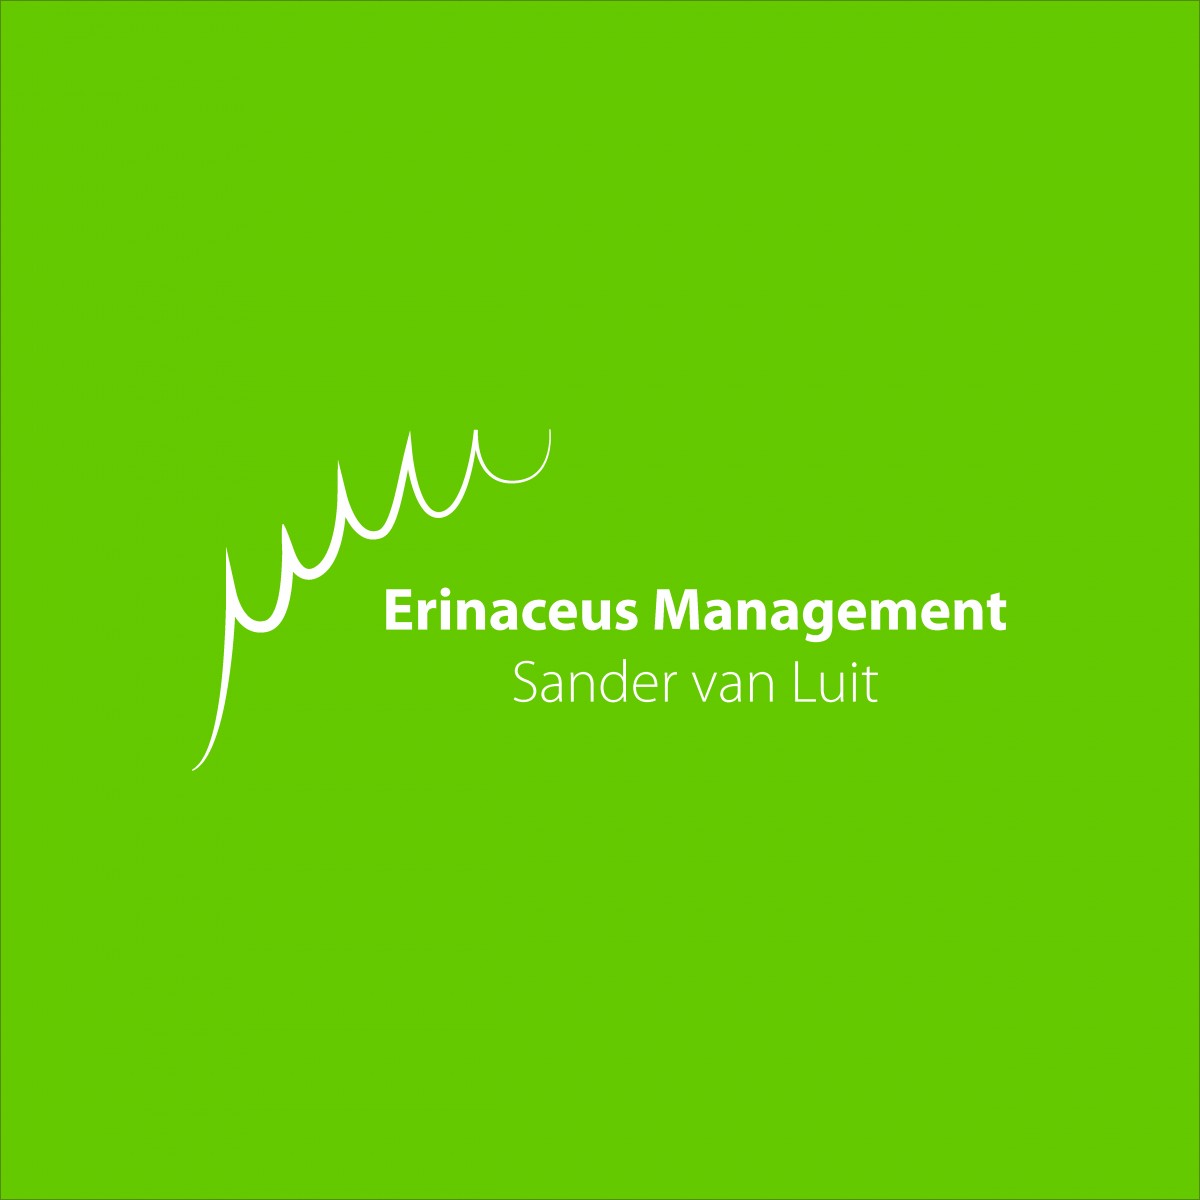 Erinaceus Management